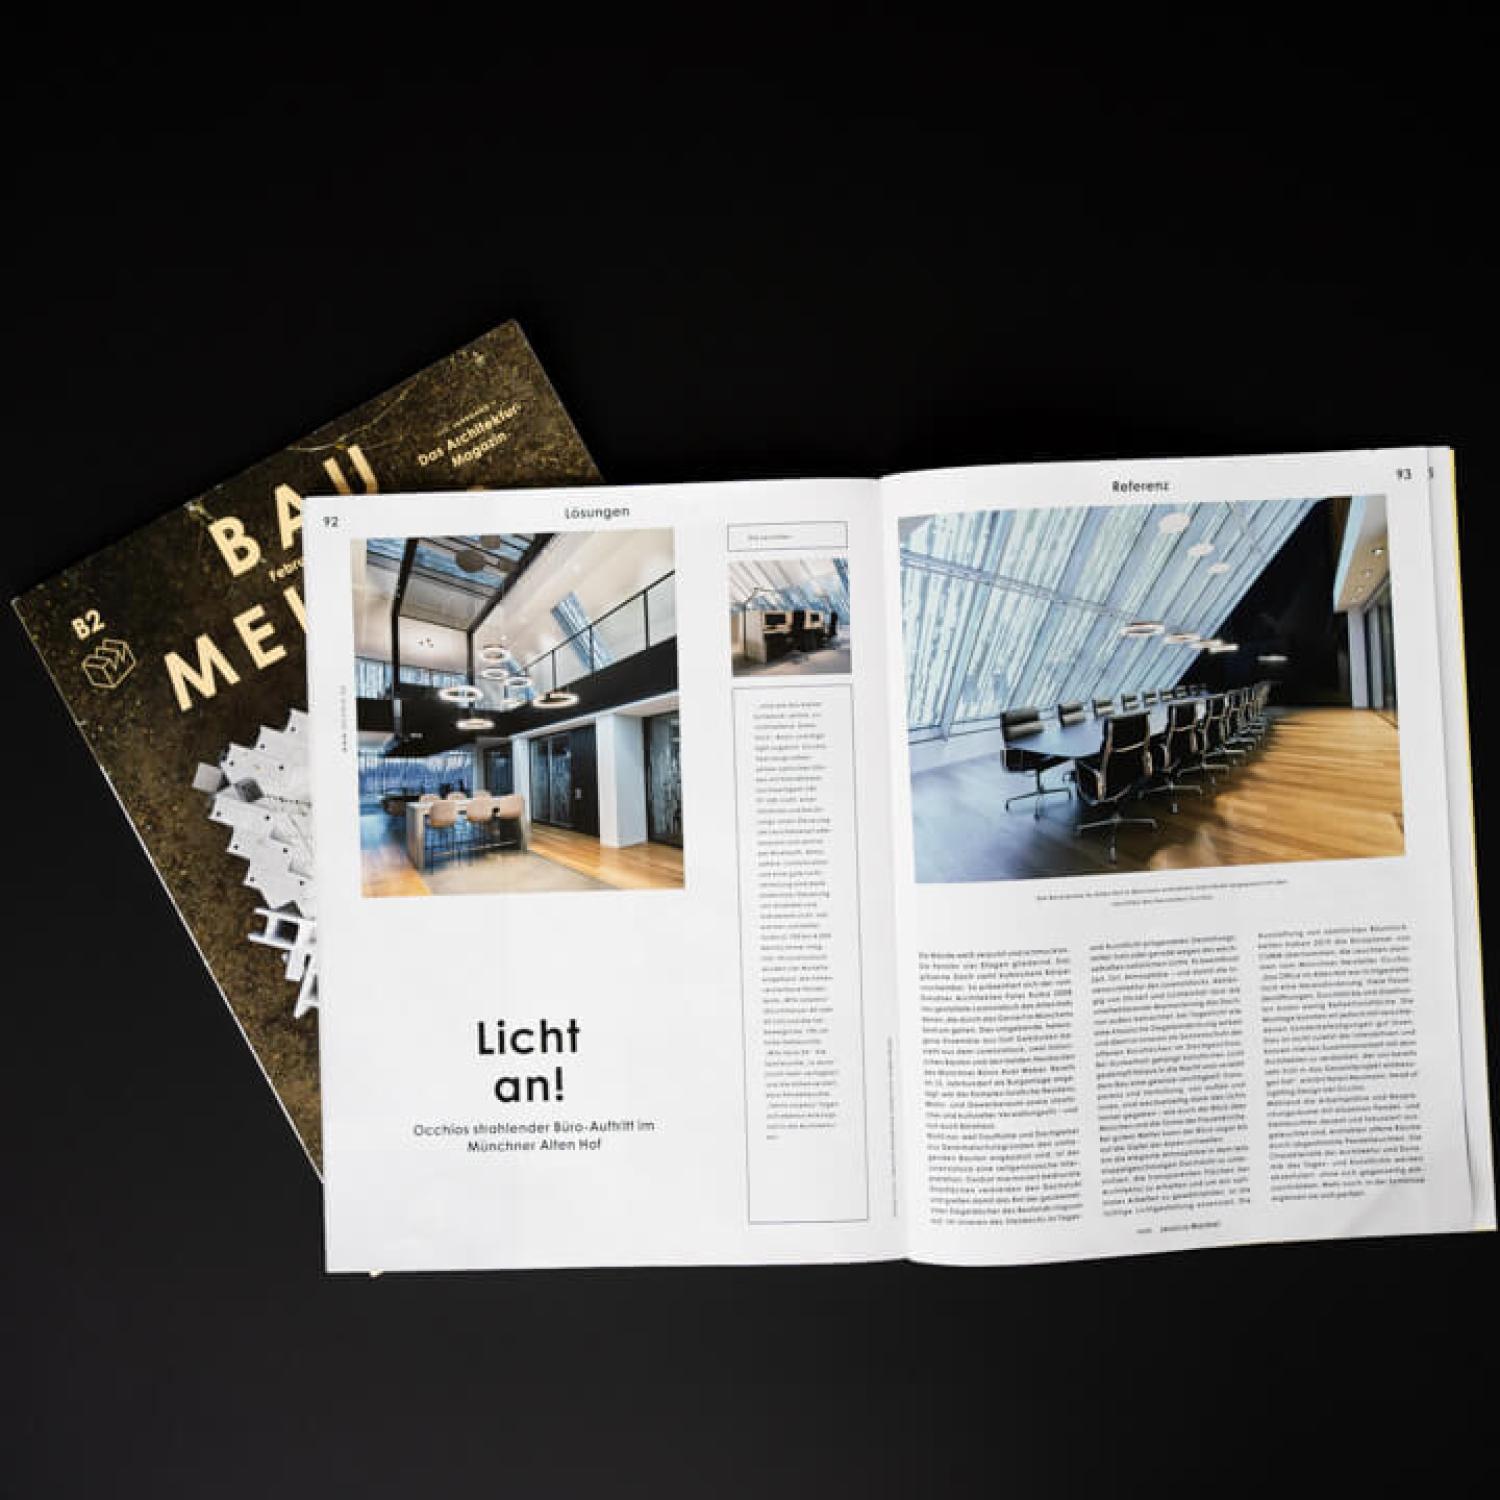 Architekturmagazin BAUMEISTER bietet Einblicke – Licht an für EHM mit Occhio und CSMM – architecture matters